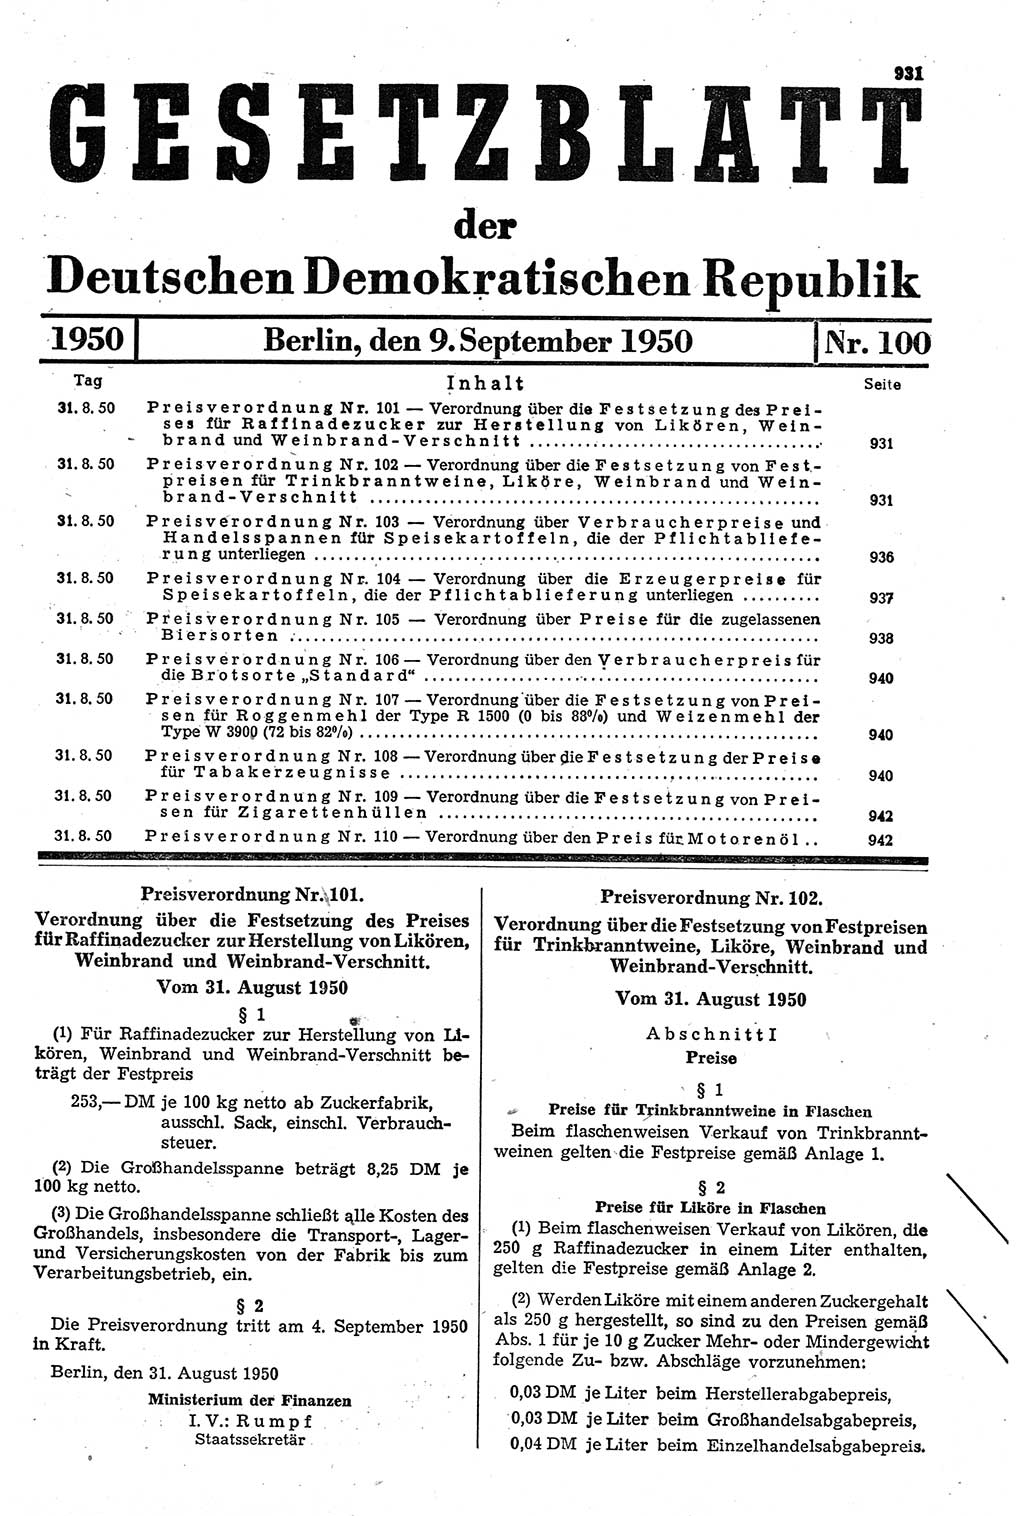 Gesetzblatt (GBl.) der Deutschen Demokratischen Republik (DDR) 1950, Seite 931 (GBl. DDR 1950, S. 931)